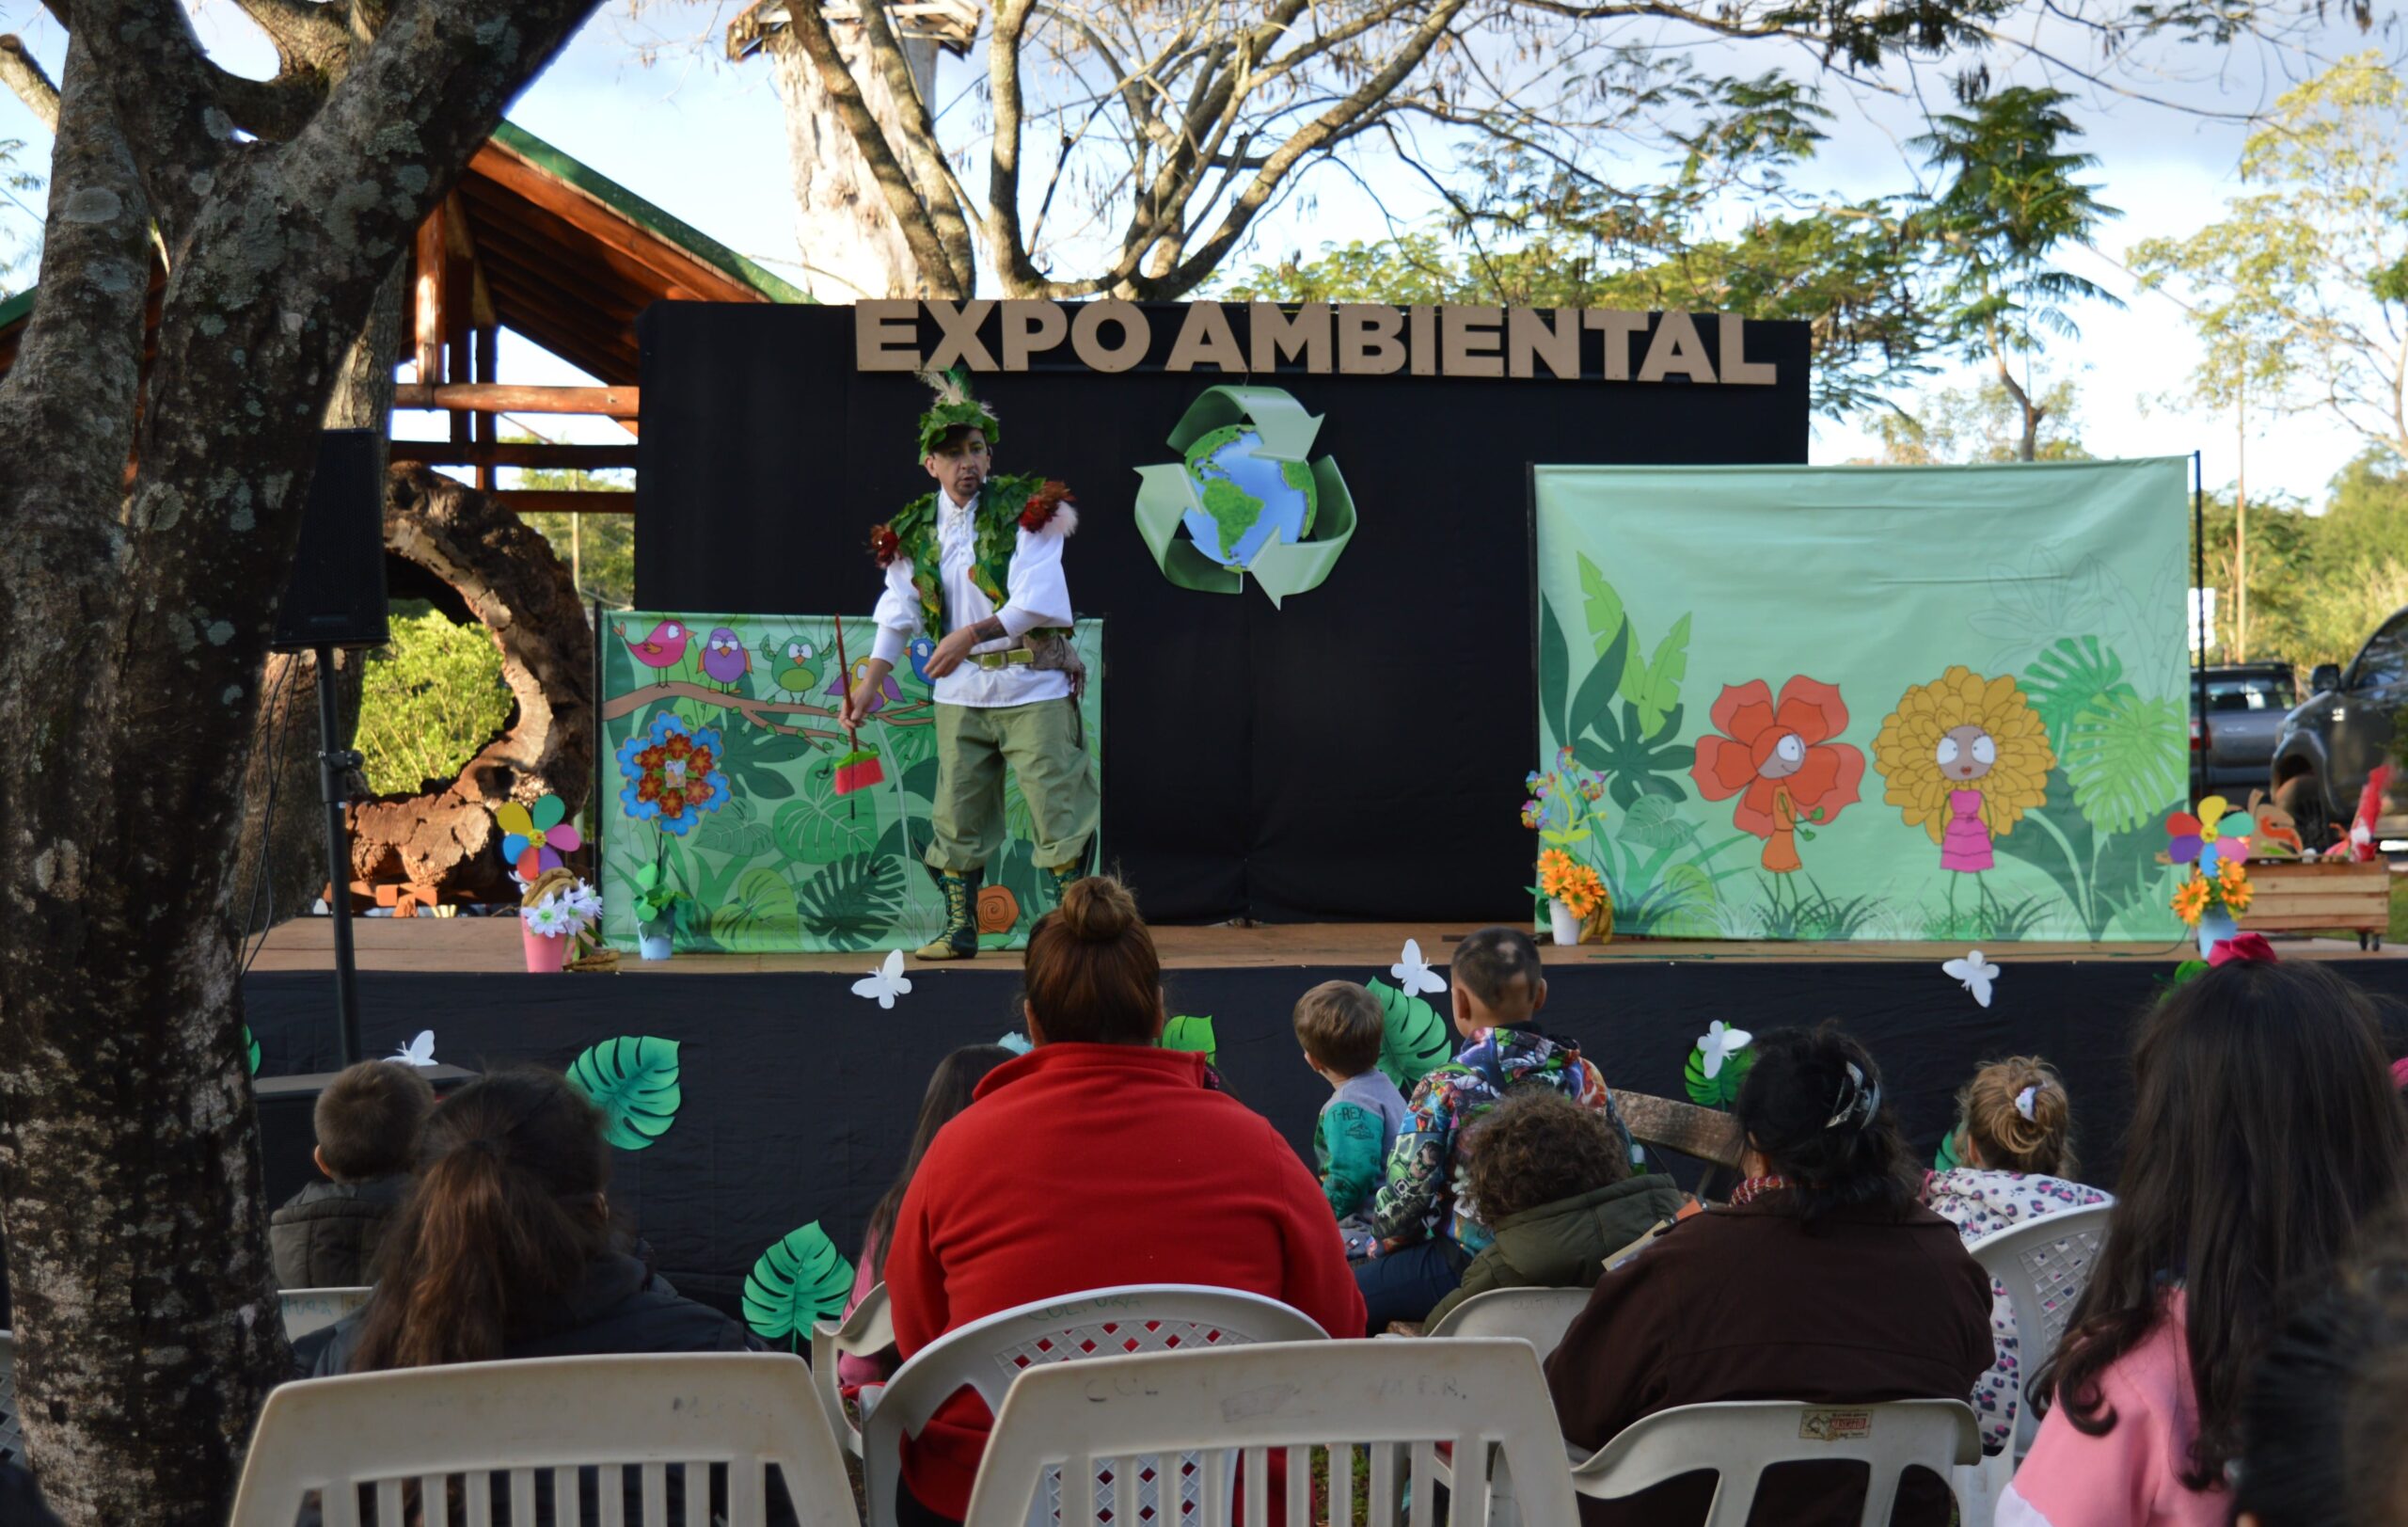 1° Expo Ambiental en Puerto Rico tuvo lugar el día de ayer